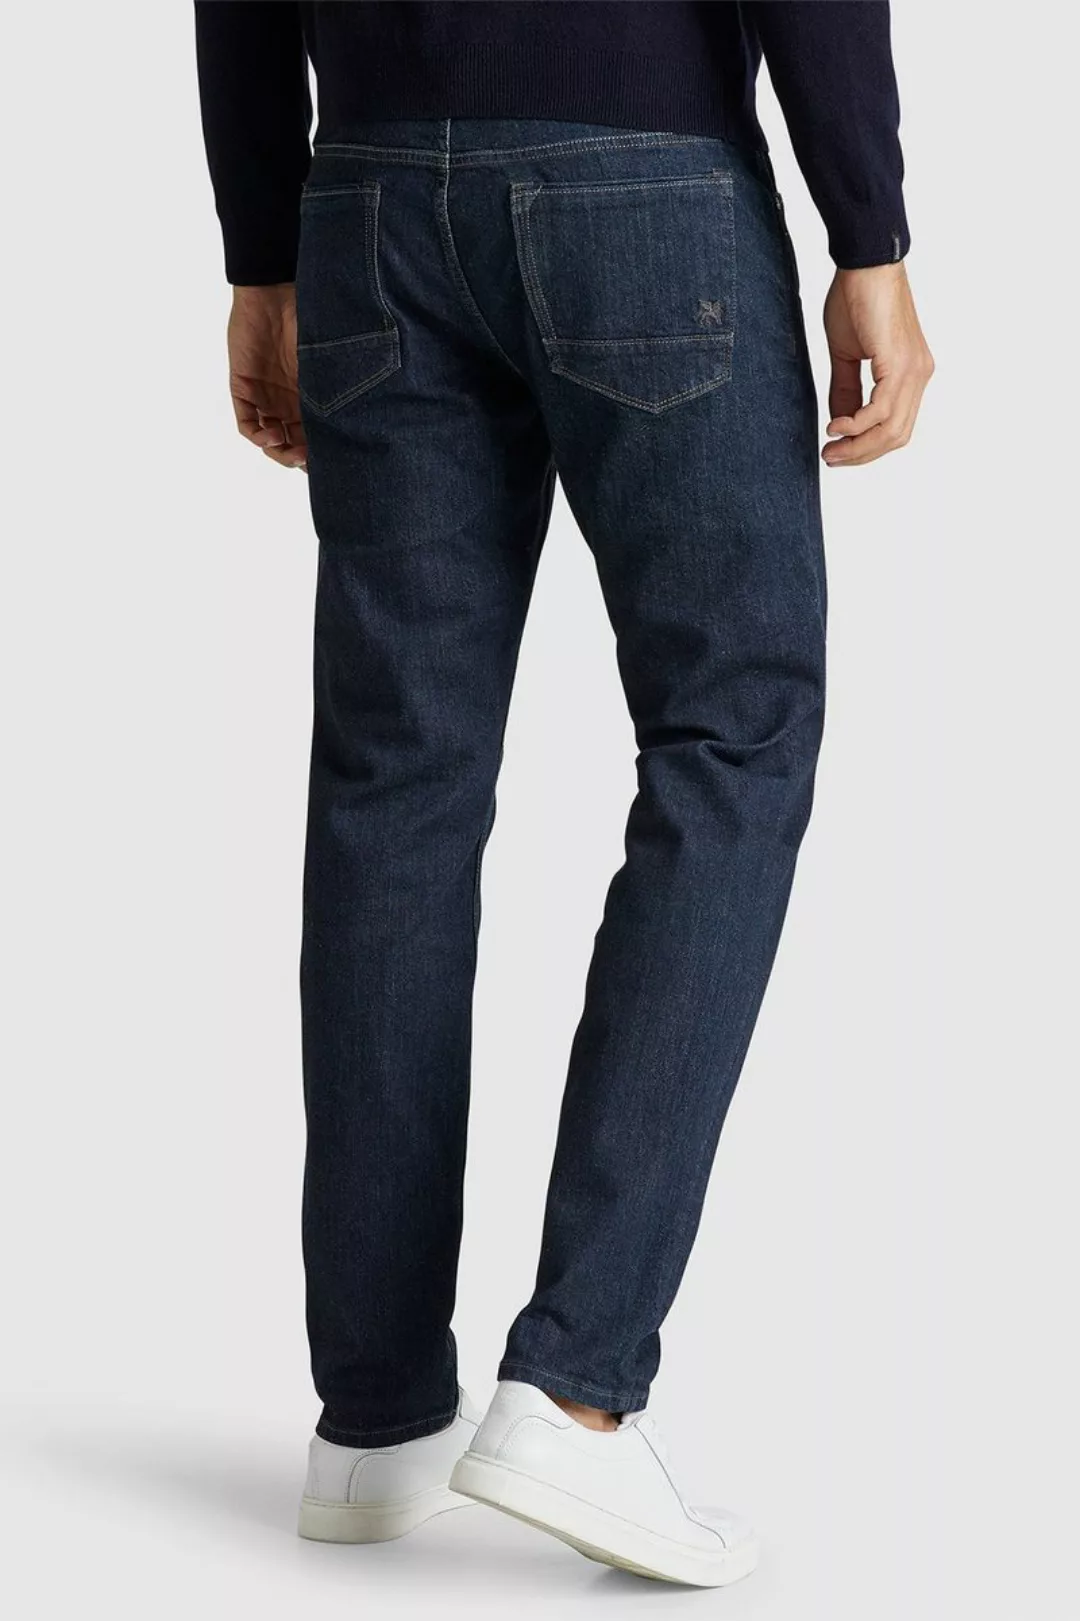 Vanguard Jeans V7 Rider Dunkelblau - Größe W 30 - L 34 günstig online kaufen